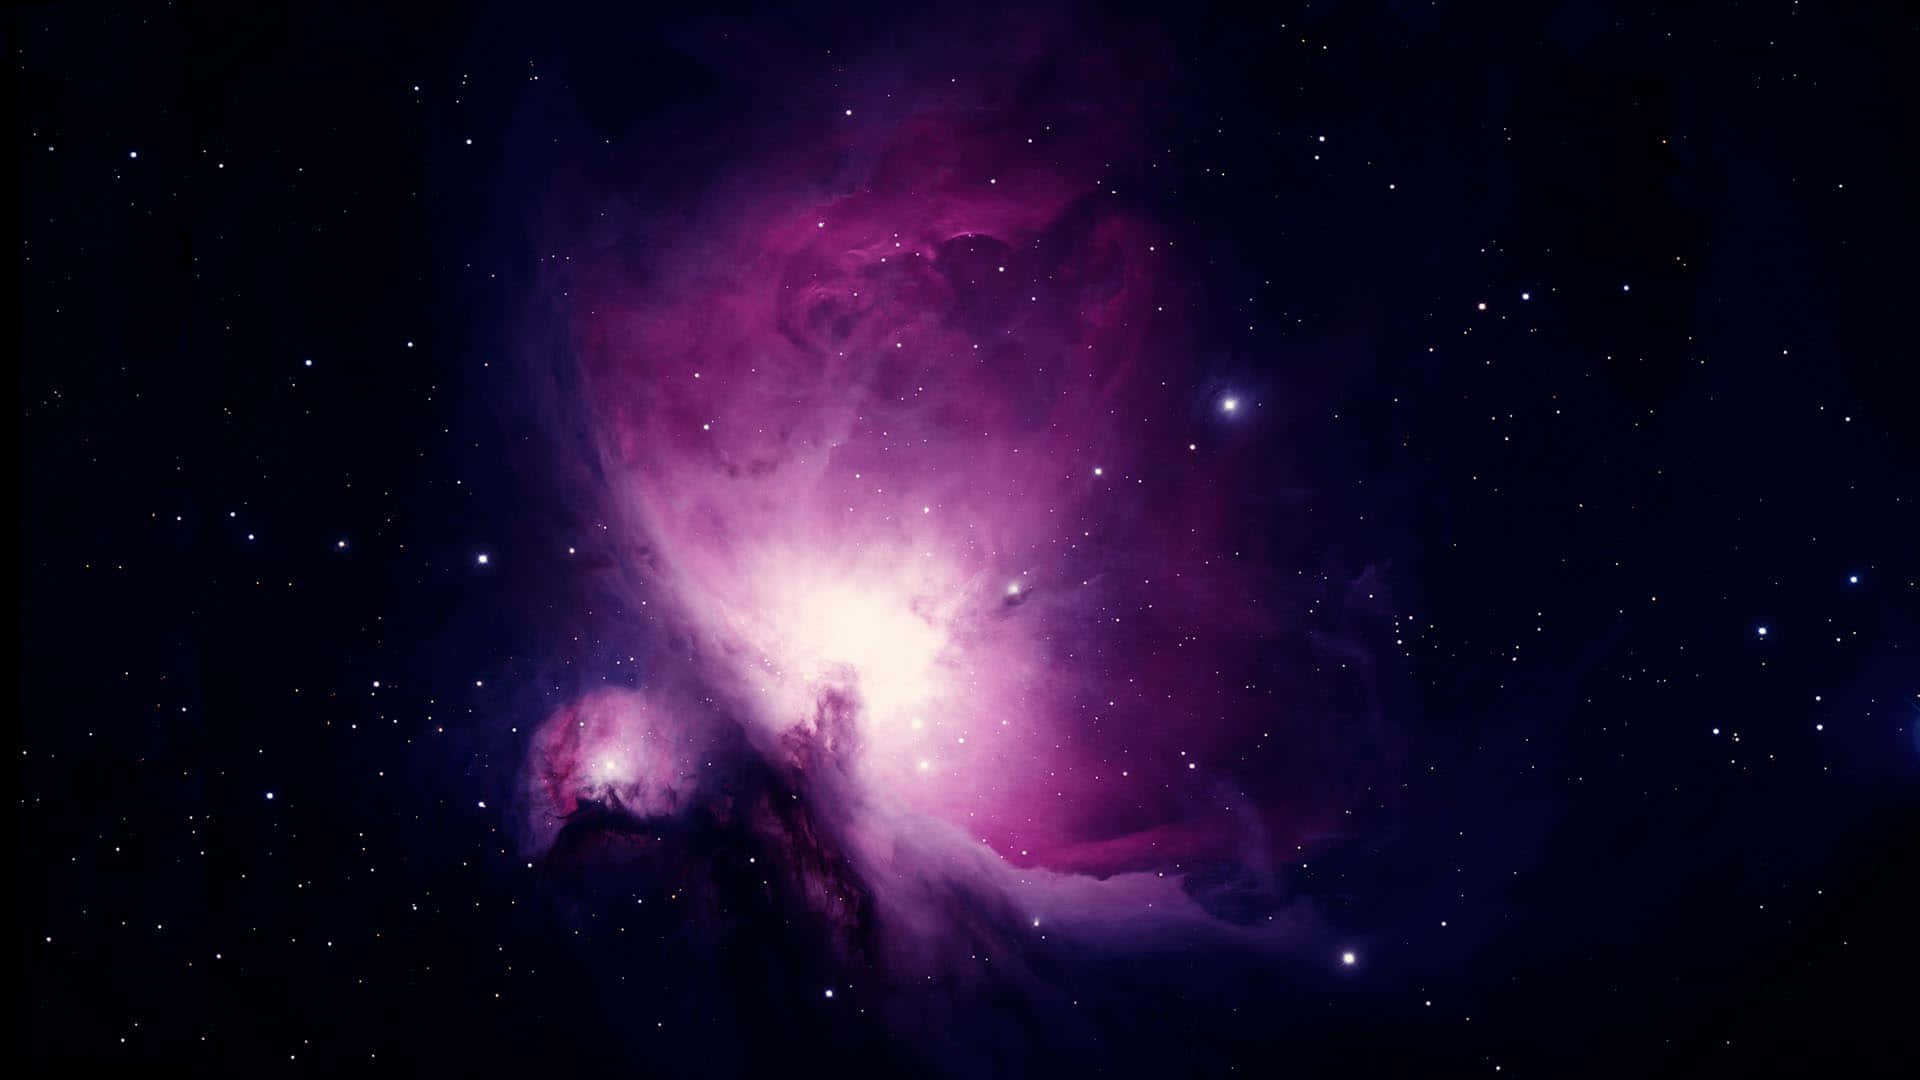 Unosfondo Spaziale Viola Affascinante Che Evoca Un Senso Di Esplorazione E Apertura.